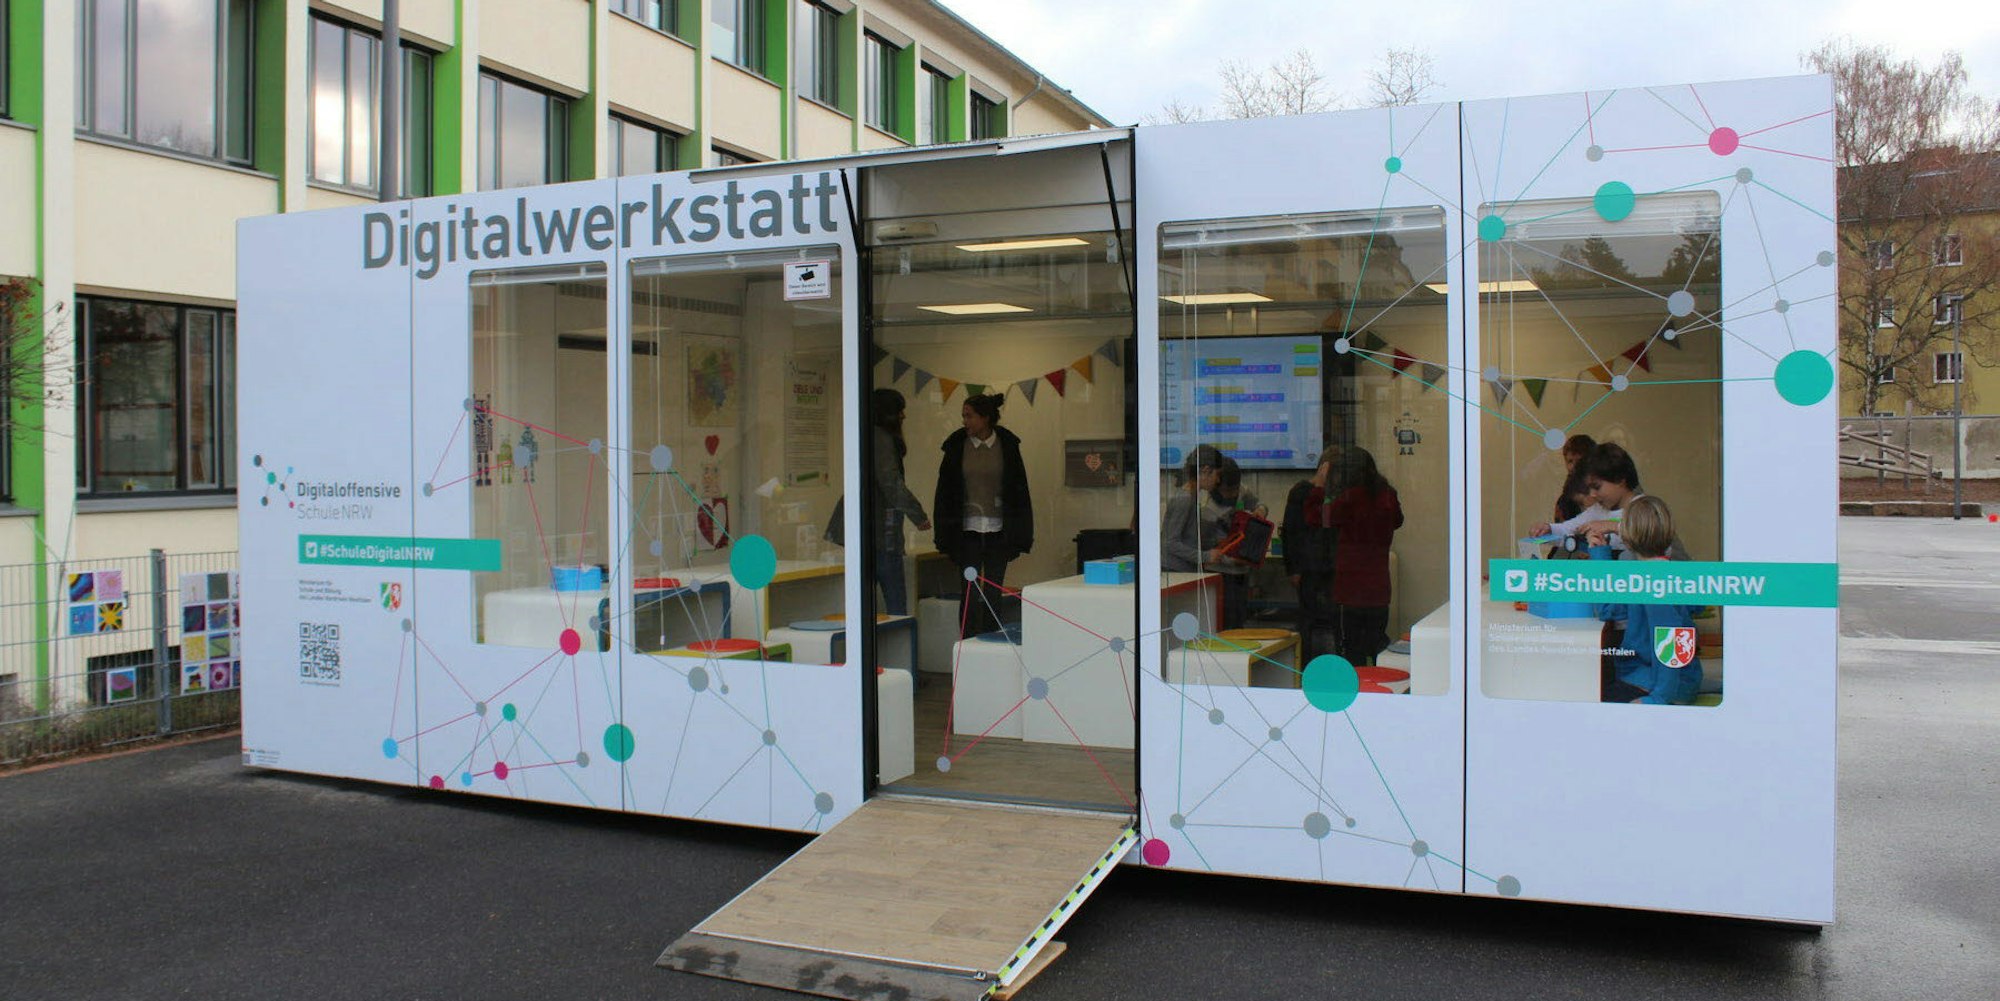 Für eine Woche steht die Mobile Digitalwerkstatt auf dem Schulhof der GGS Mommsenstraße. Dort finden Workshops für Schülerinnen und Schüler statt sowie Infoveranstaltungen für Lehrer und Eltern.